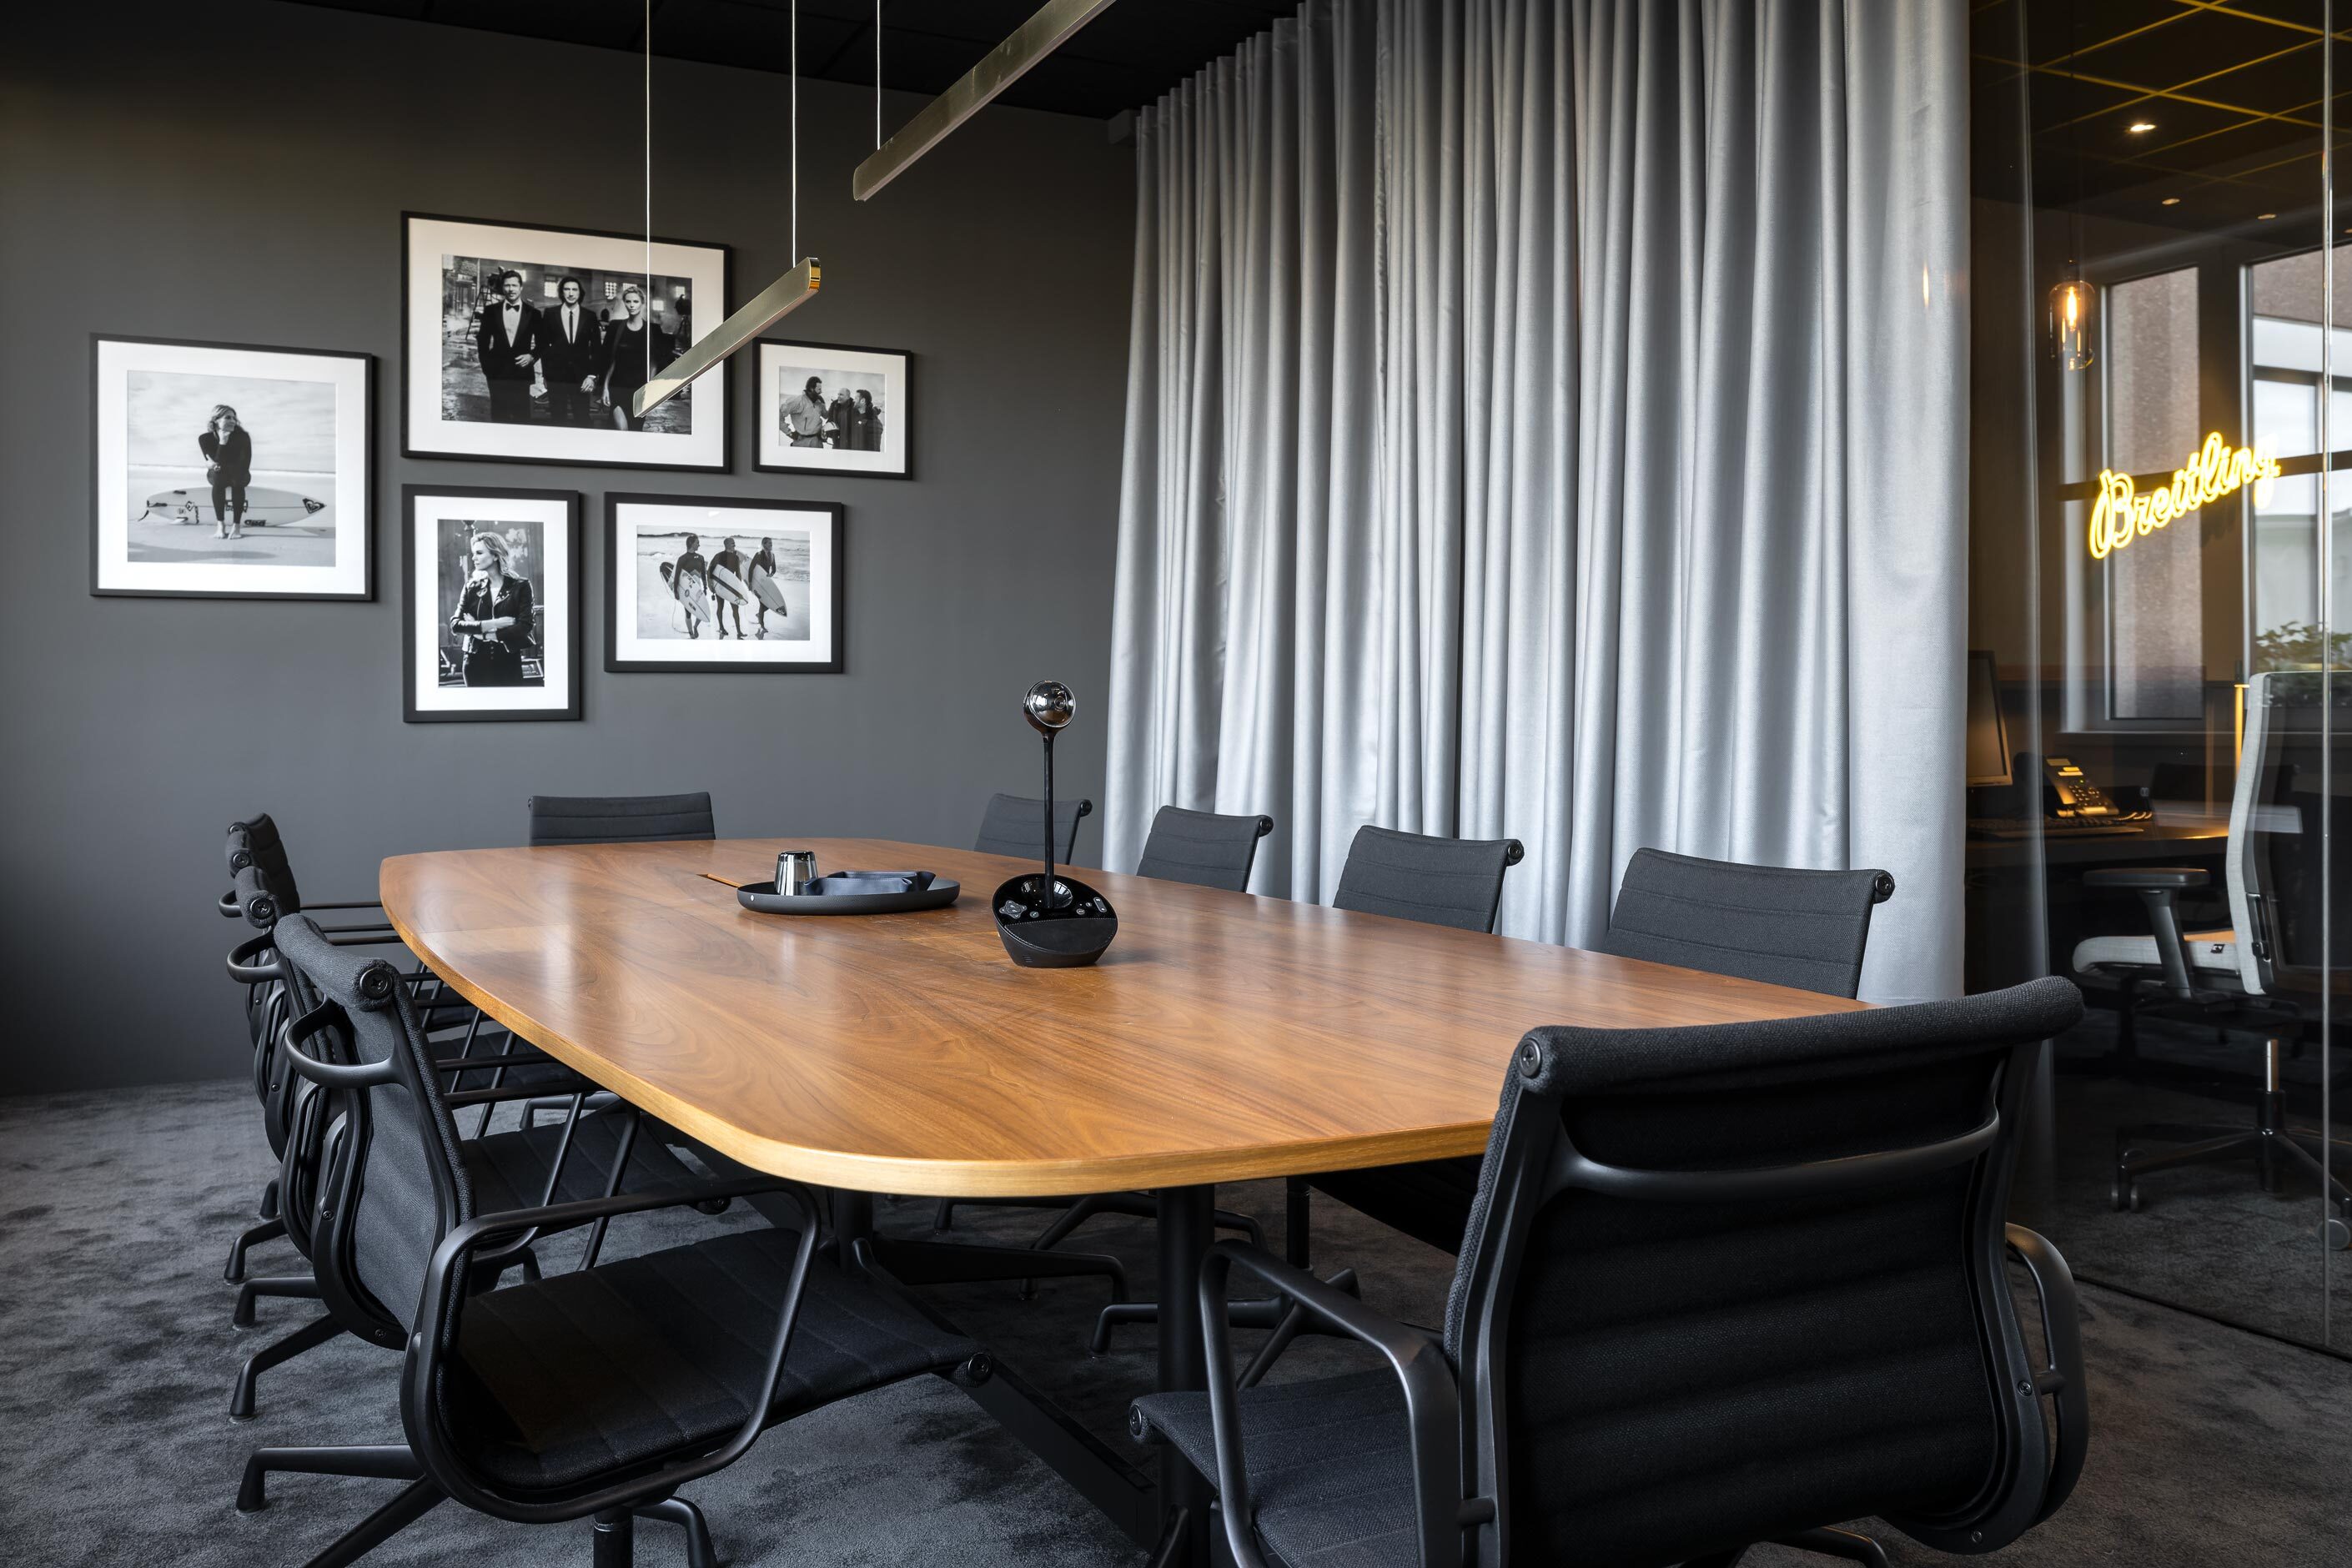 Breitling Deutschland GmbH | Besprechungsraum mit zugezogenem Vorhang